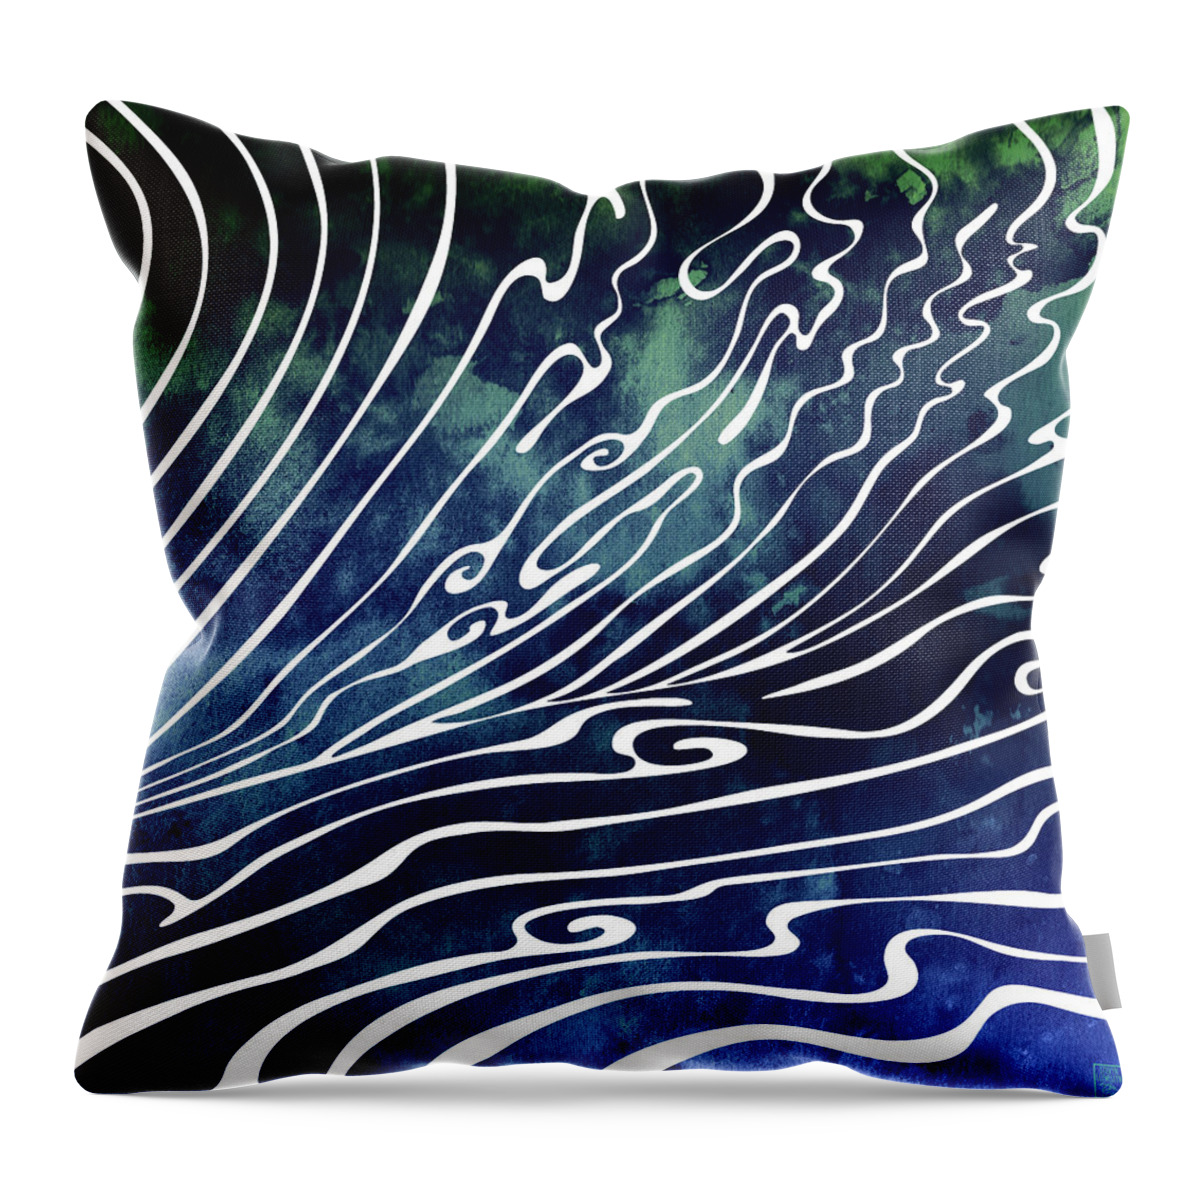 Swell Throw Pillow featuring the digital art Wine Dark by Stevyn Llewellyn